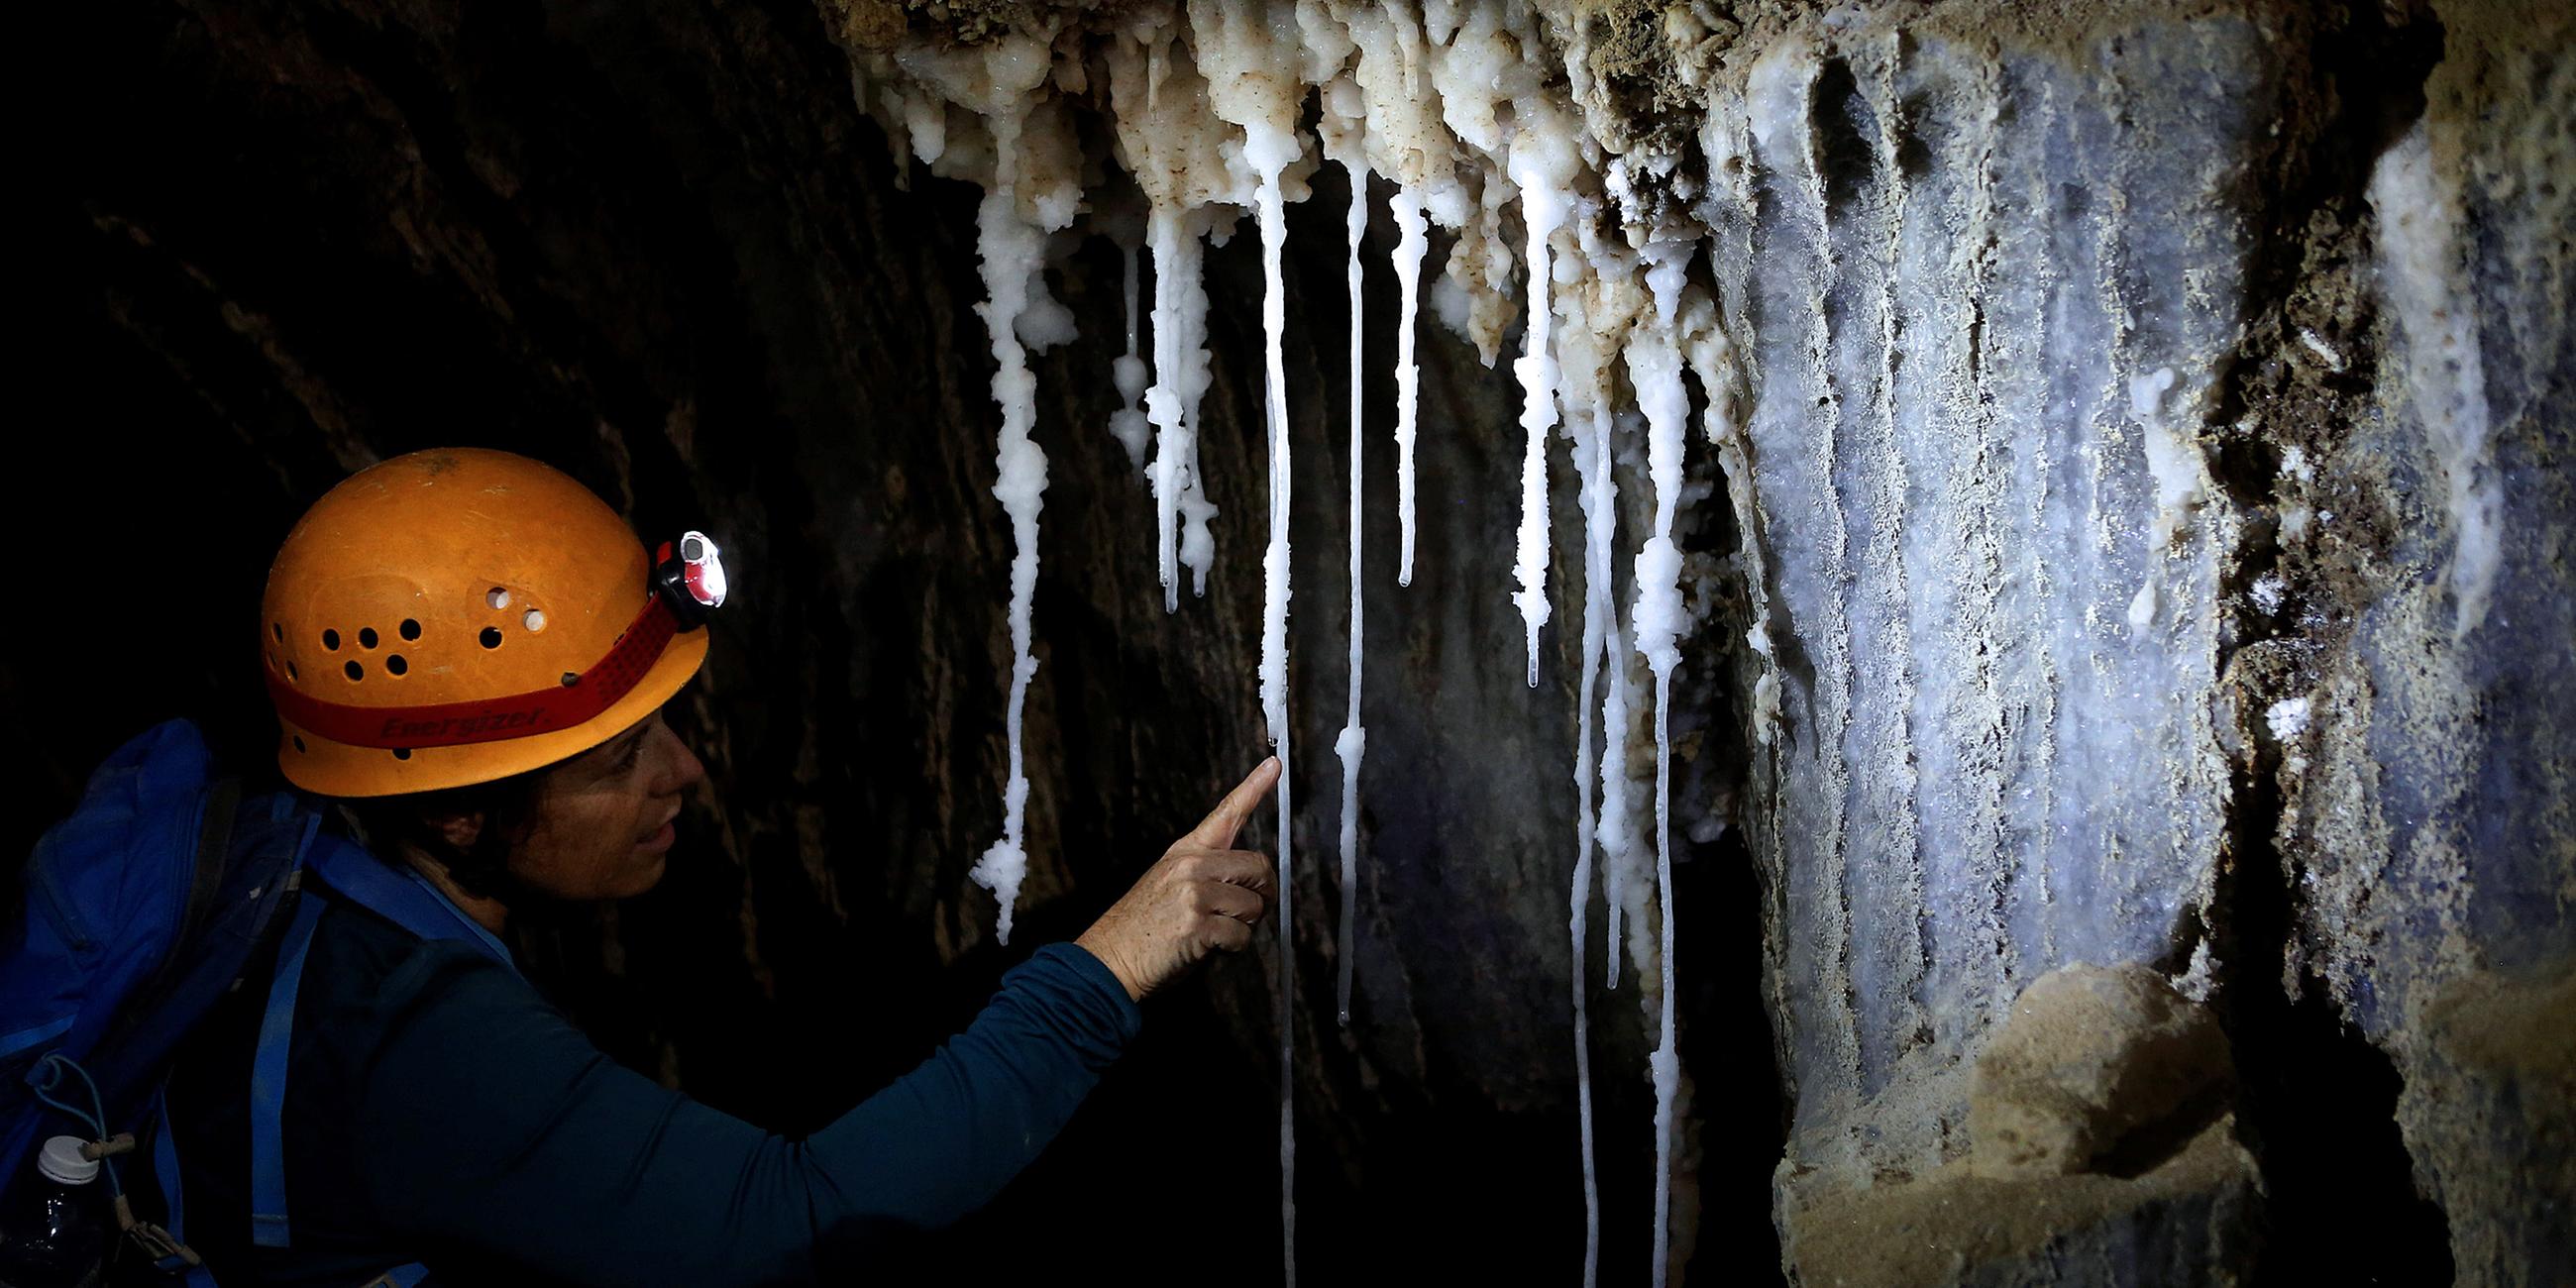 Eine Frau betrachetet Stalaktiten in der Malcham-Höhle, Israel, aufgenommen am 27.03.2019